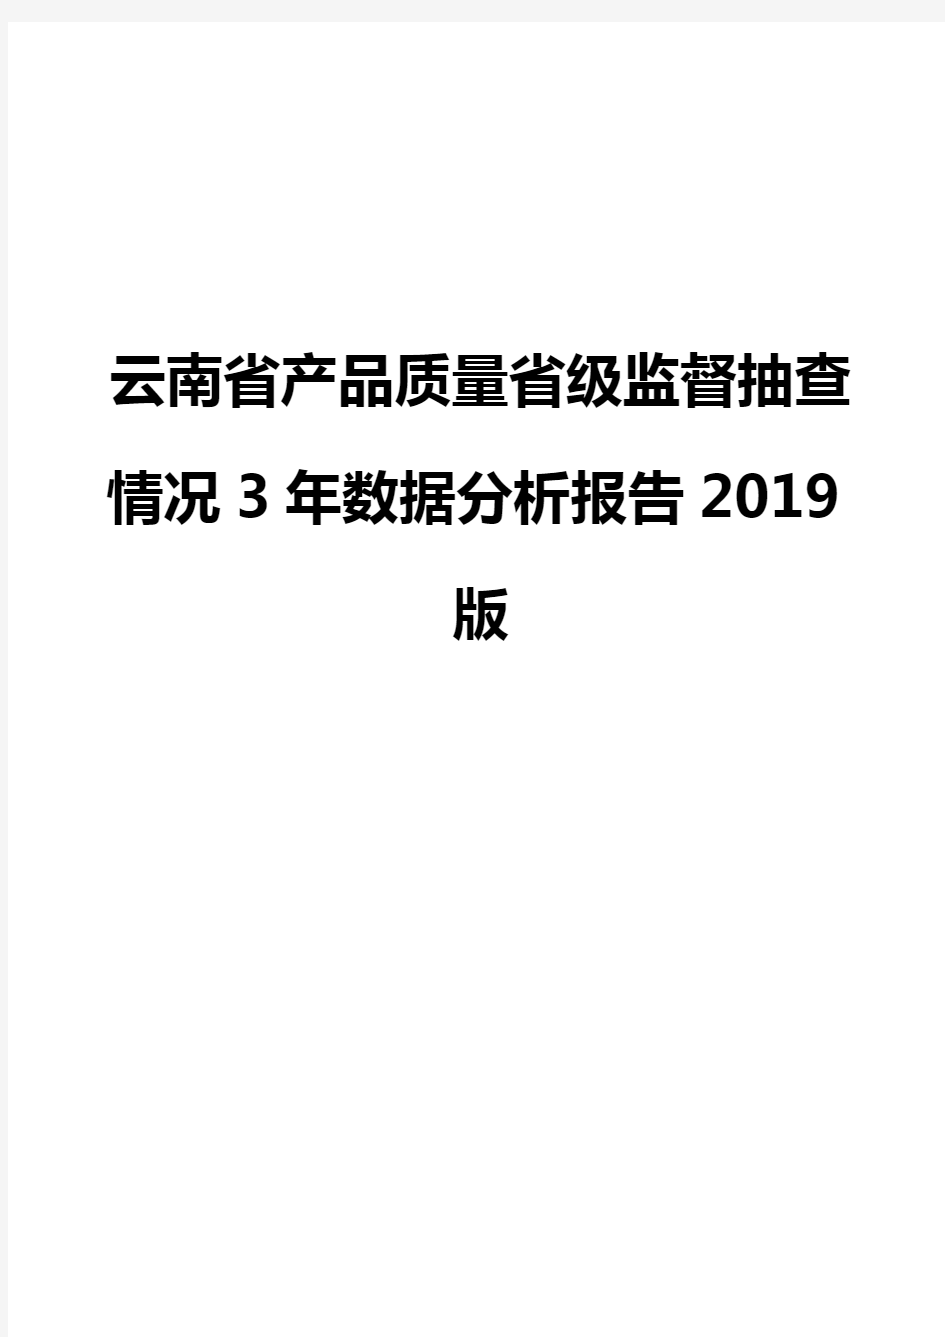 云南省产品质量省级监督抽查情况3年数据分析报告2019版